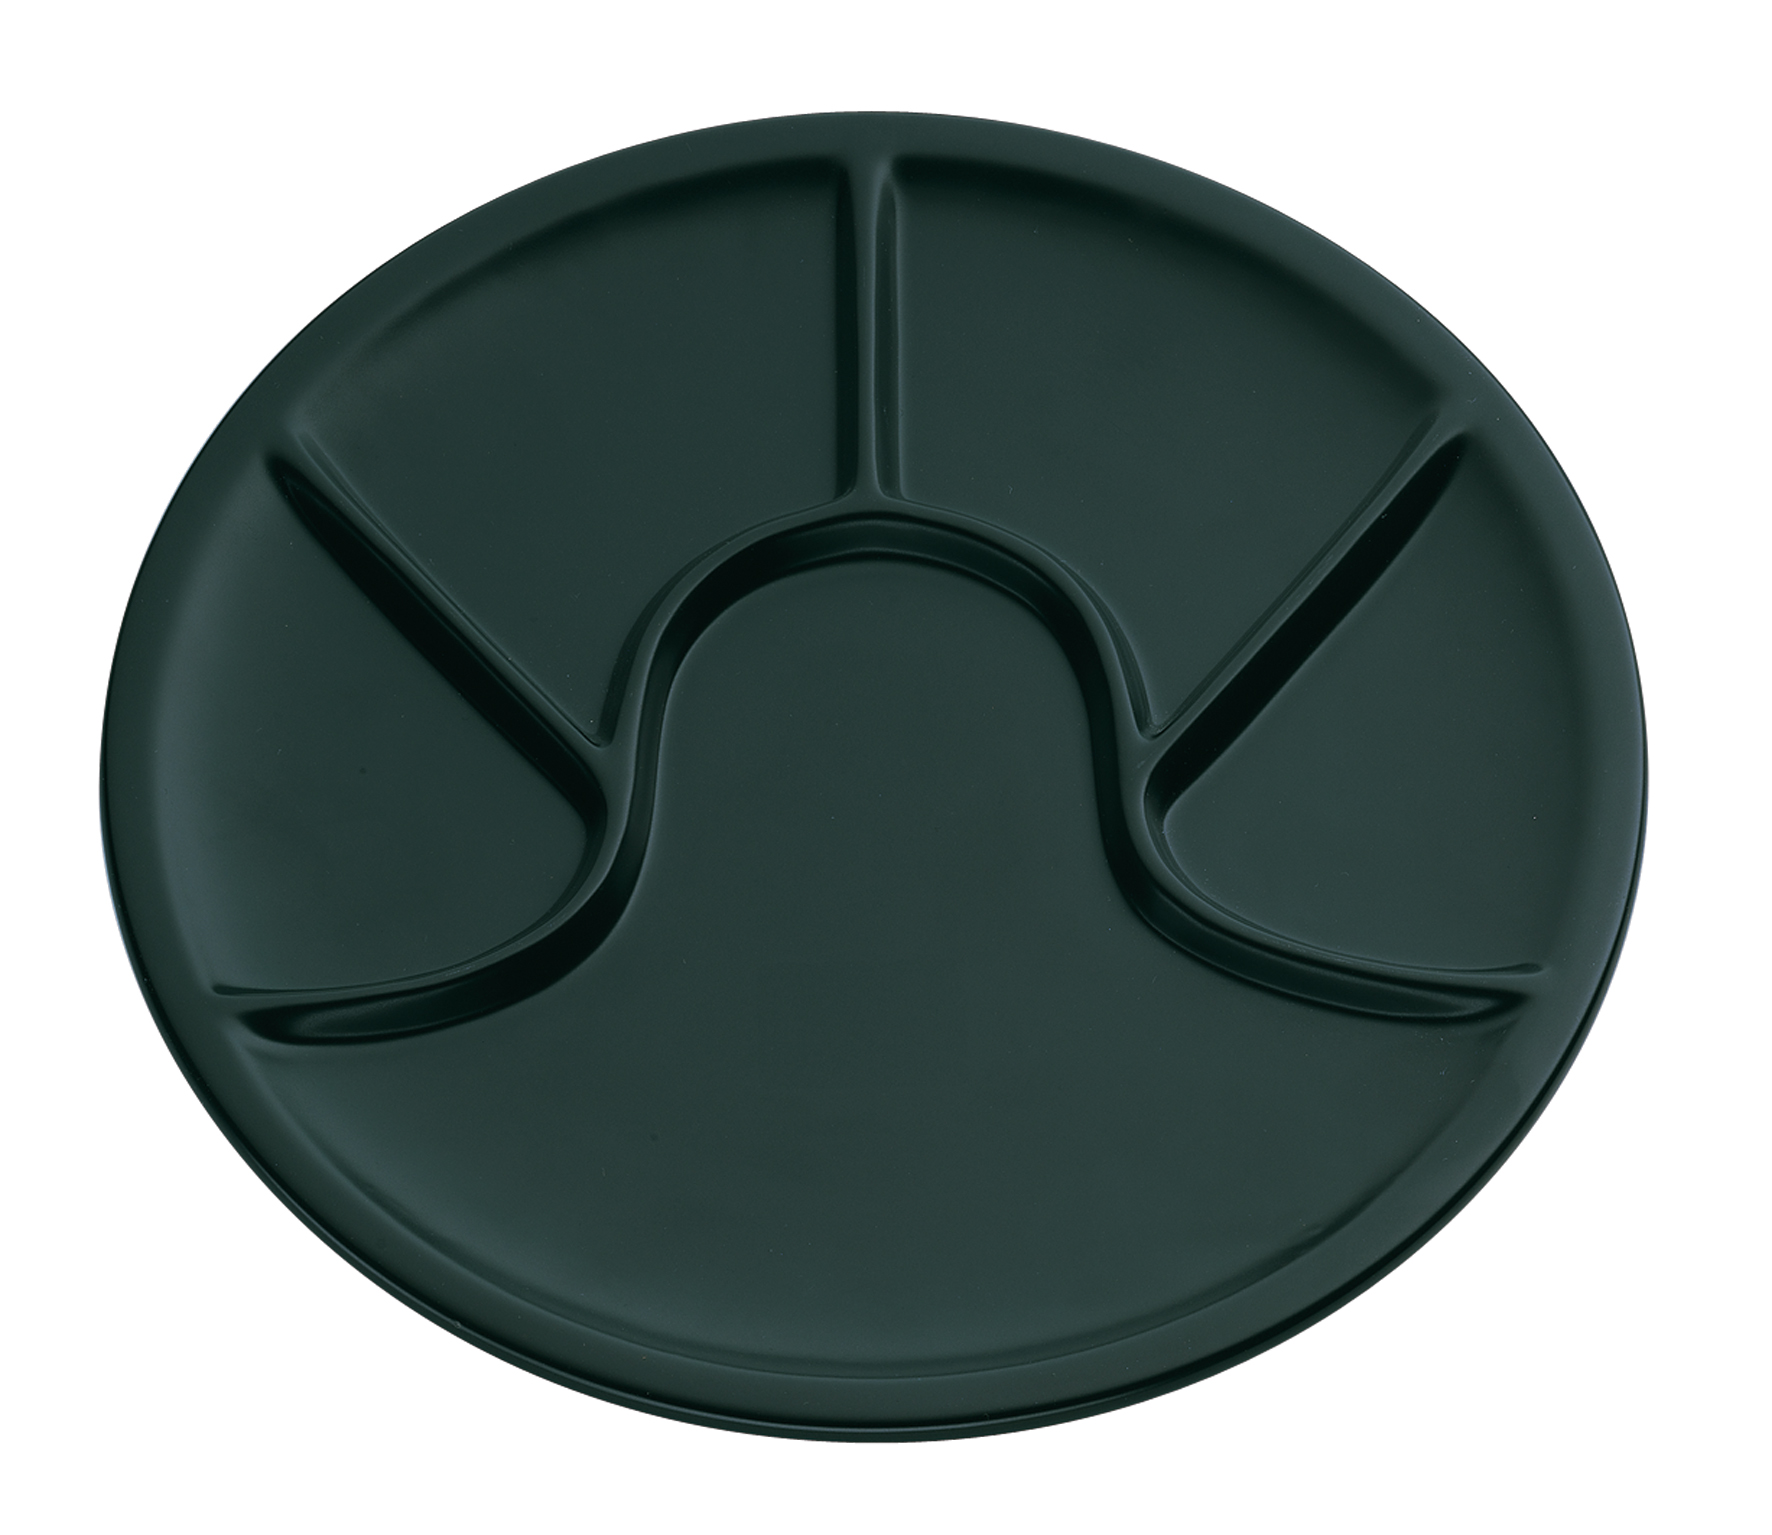 Fondueteller schwarz aus Keramik Maße: 25,0cm im Durchmesser 